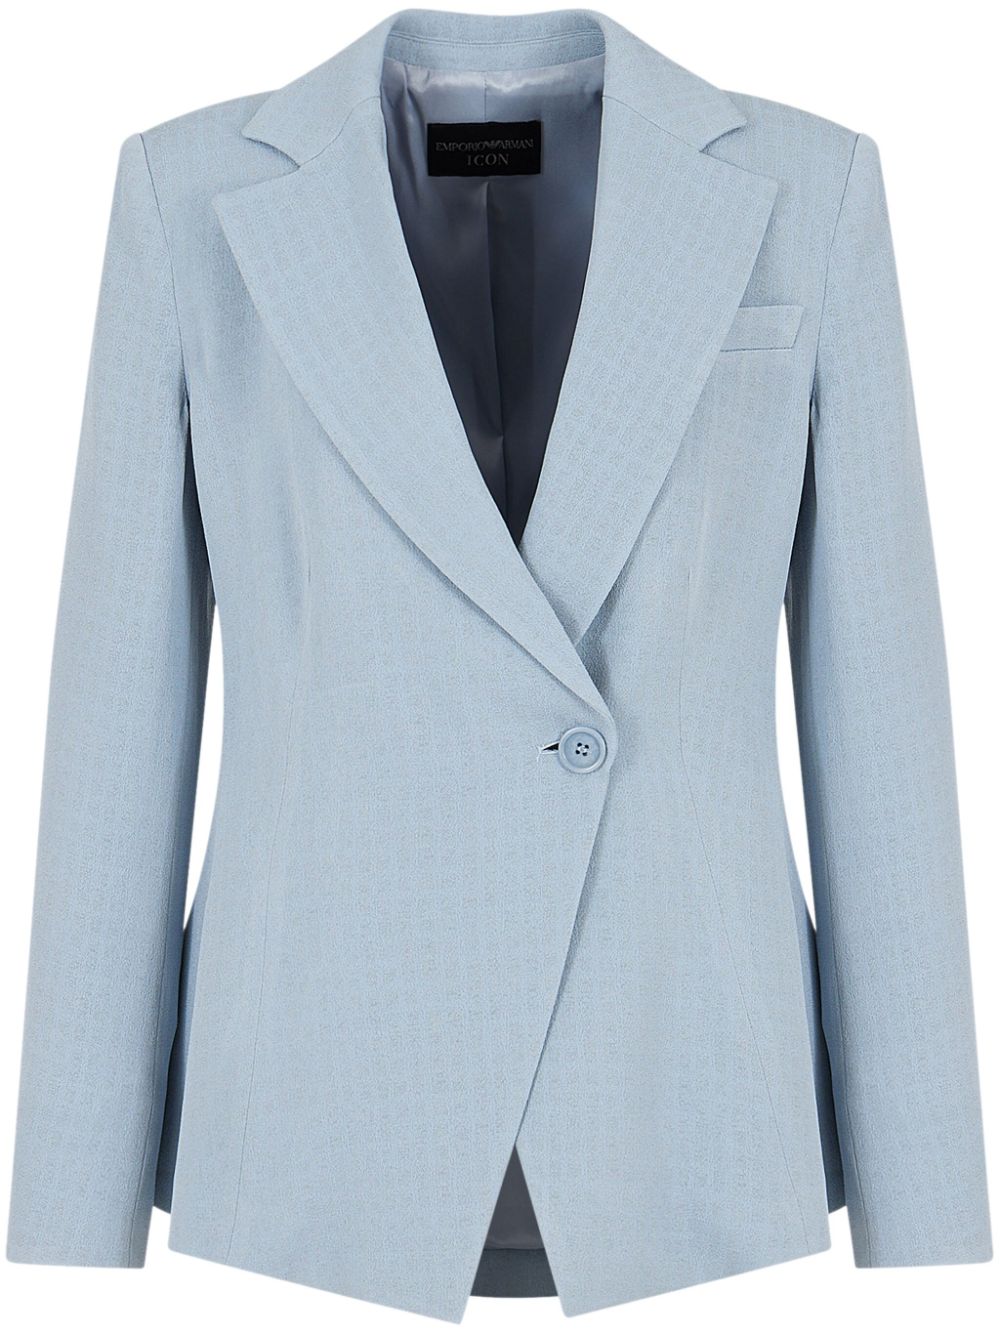 Áo khoác blazer màu xanh nhạt dạng nút đơn cho nữ - SS24